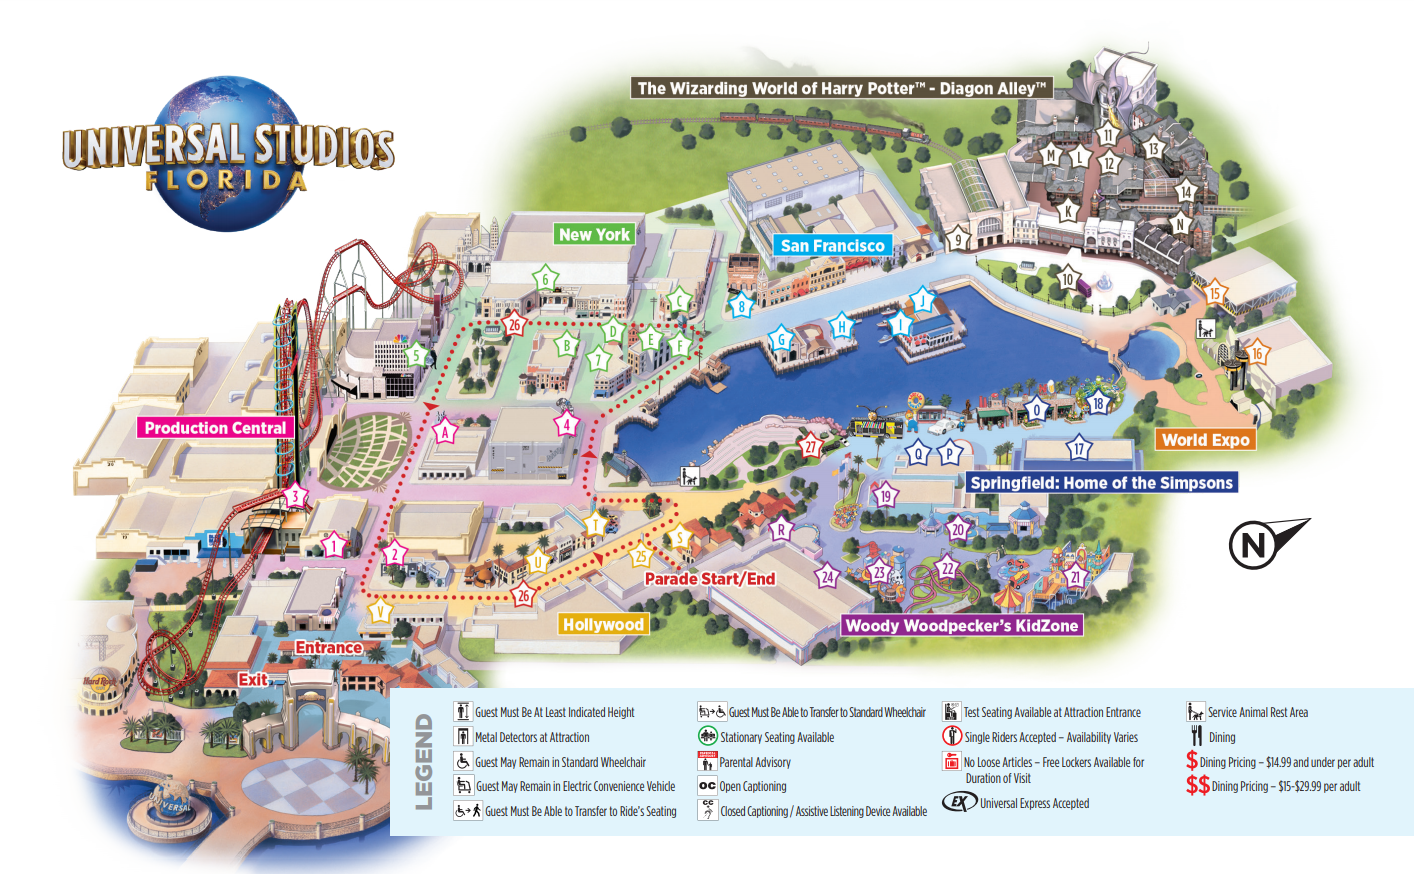 これは、ユニバーサルスタジオフロリダの公園の地図です。 Shrek4-Dは「ProductionCentral」にあります。